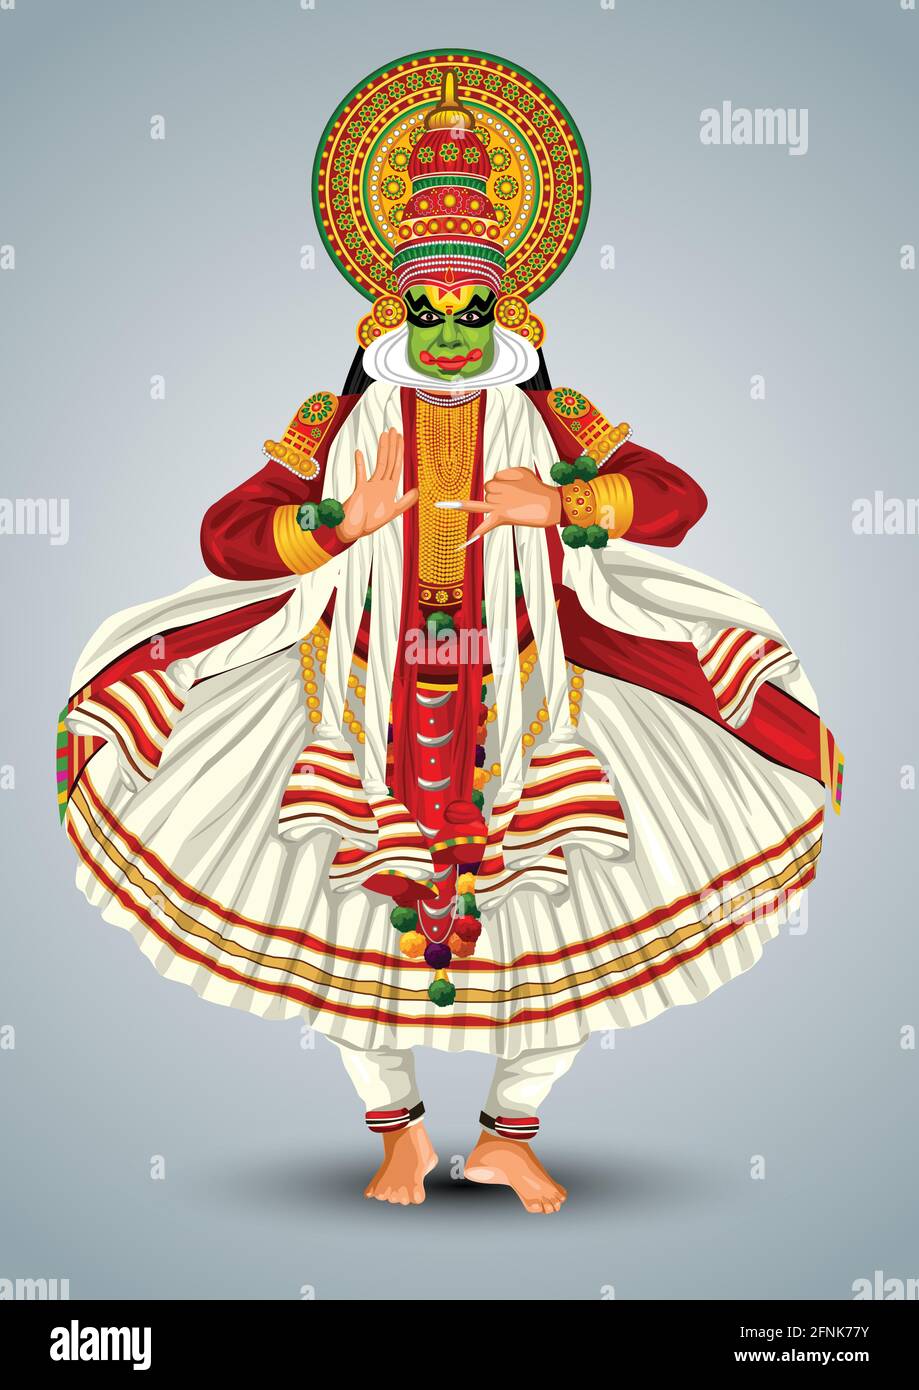 Kerala traditional folk dance kathakali full size vector illustration design Stock Vector